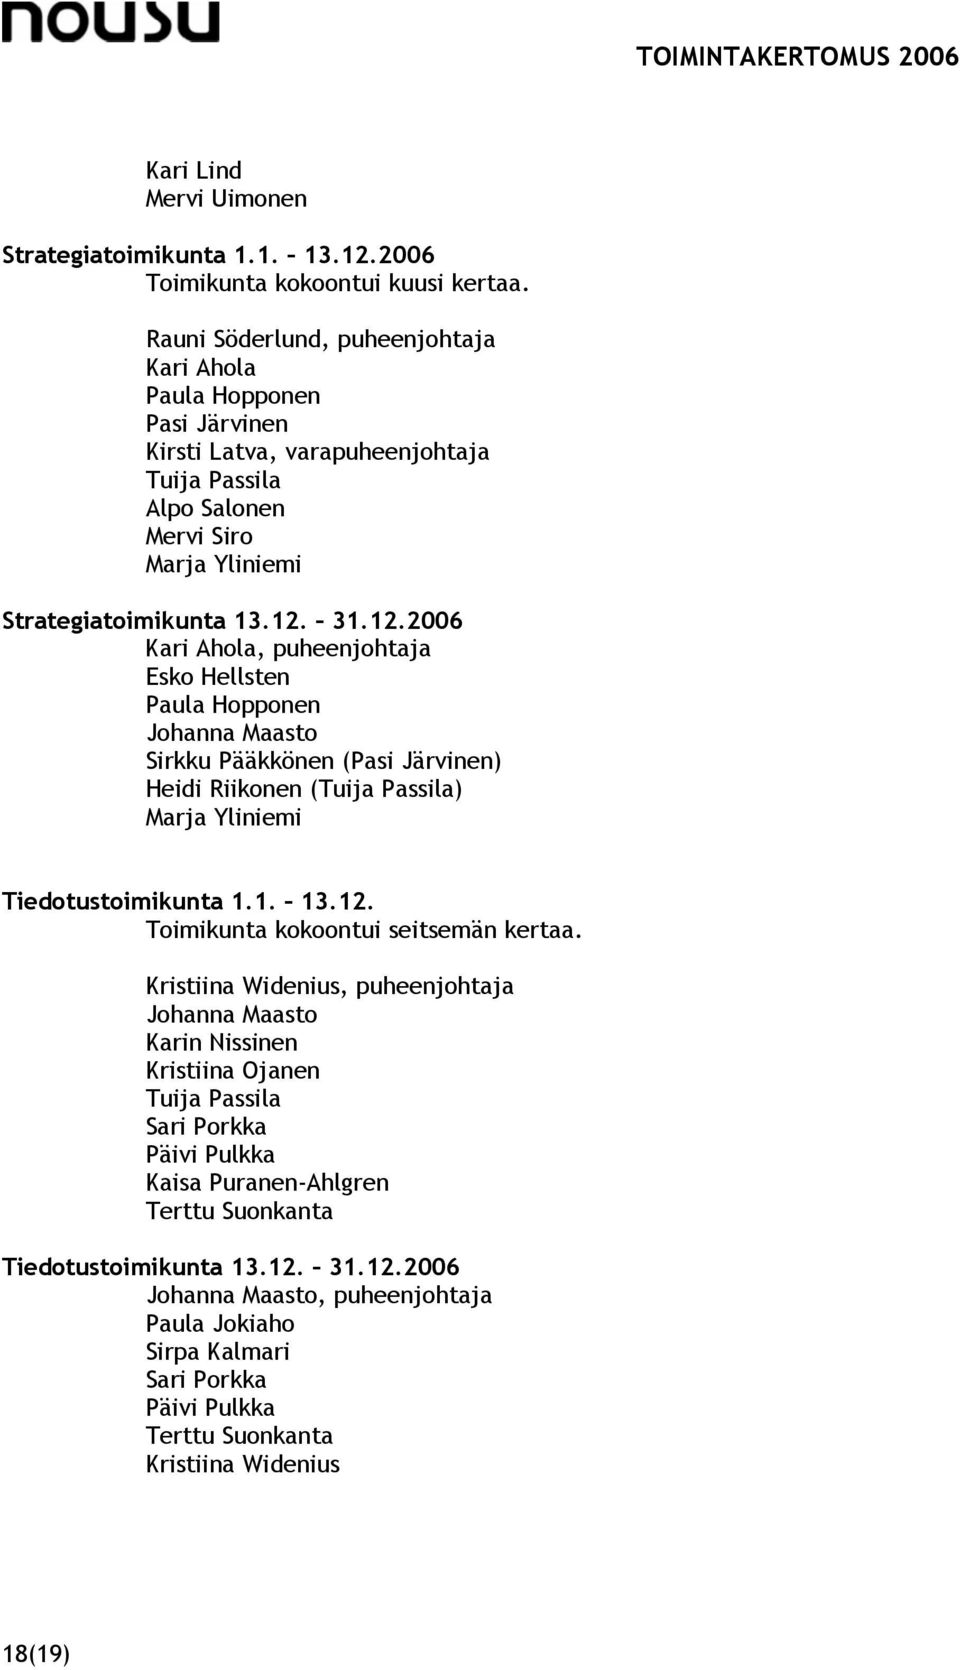 31.12.2006 Kari Ahola, puheenjohtaja Esko Hellsten Paula Hopponen Johanna Maasto Sirkku Pääkkönen (Pasi Järvinen) Heidi Riikonen (Tuija Passila) Marja Yliniemi Tiedotustoimikunta 1.1. 13.12. Toimikunta kokoontui seitsemän kertaa.